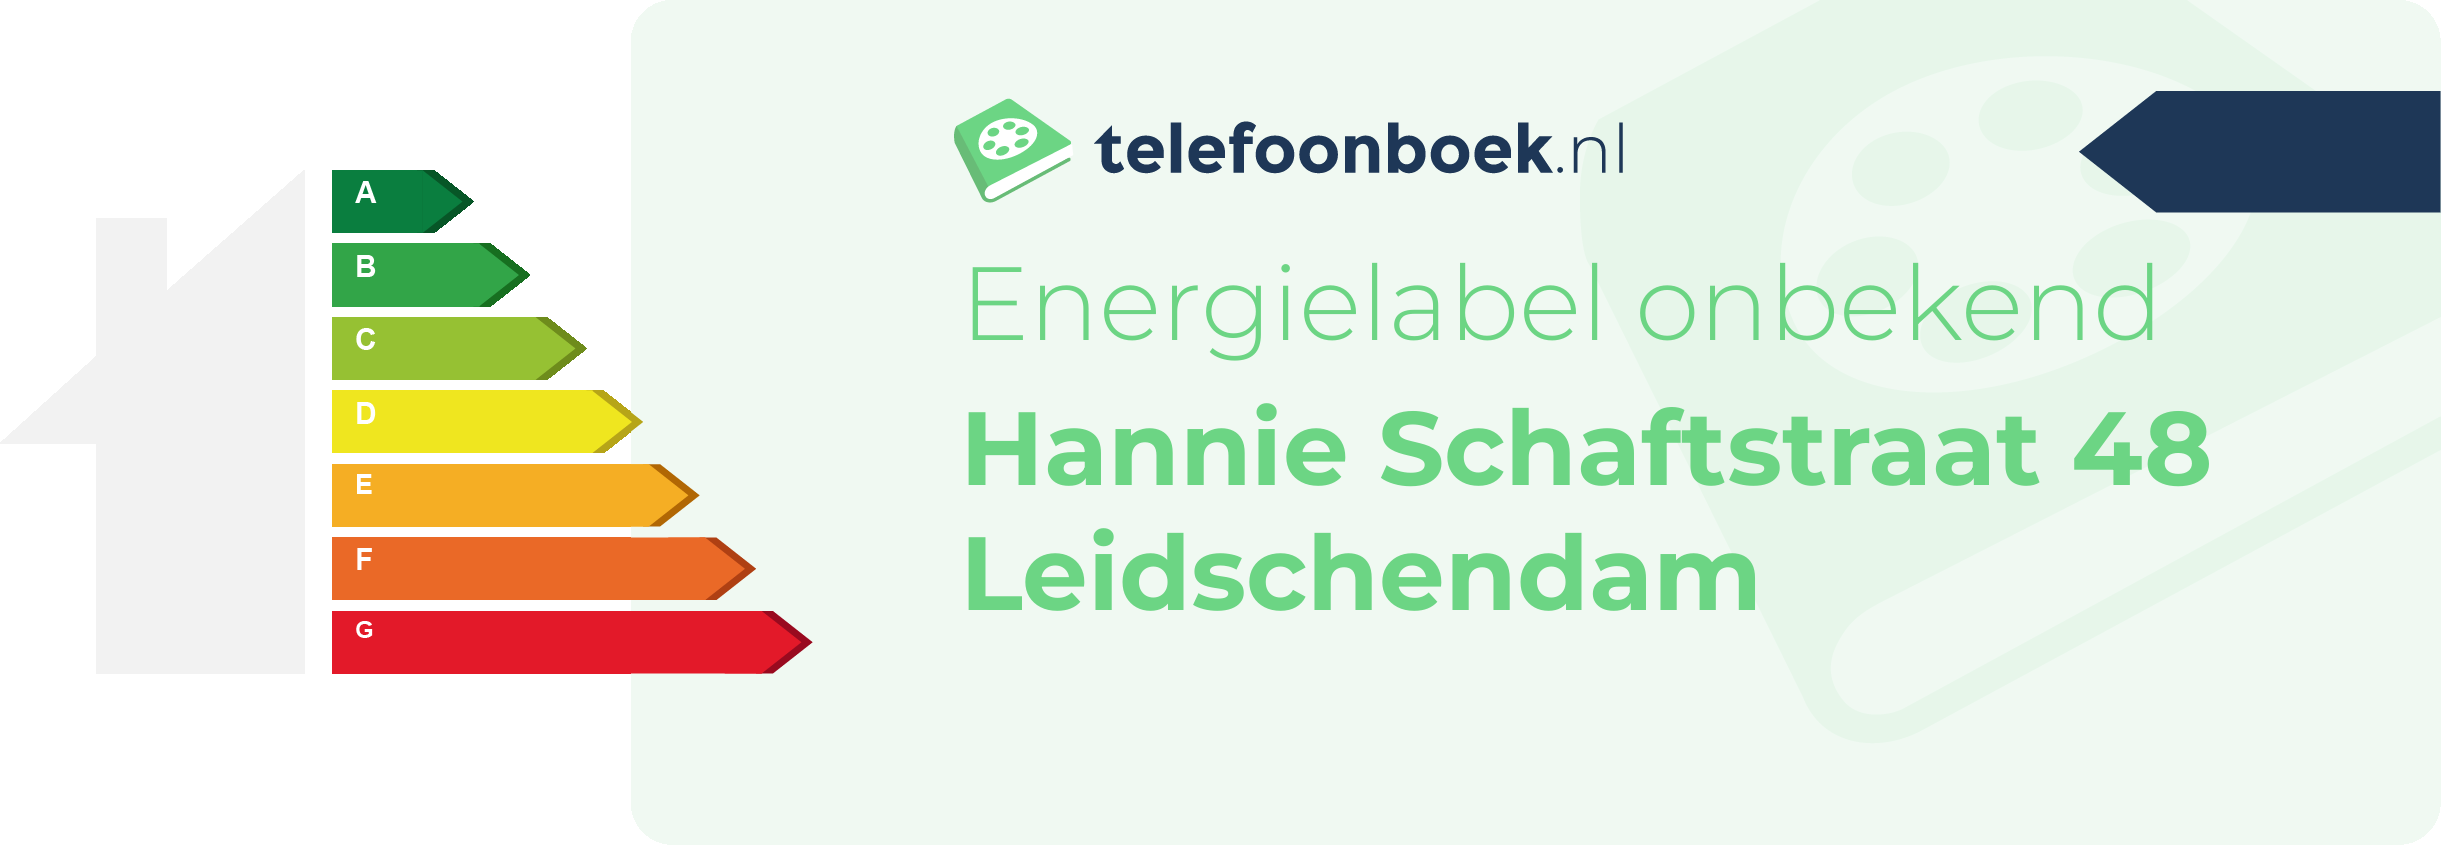 Energielabel Hannie Schaftstraat 48 Leidschendam